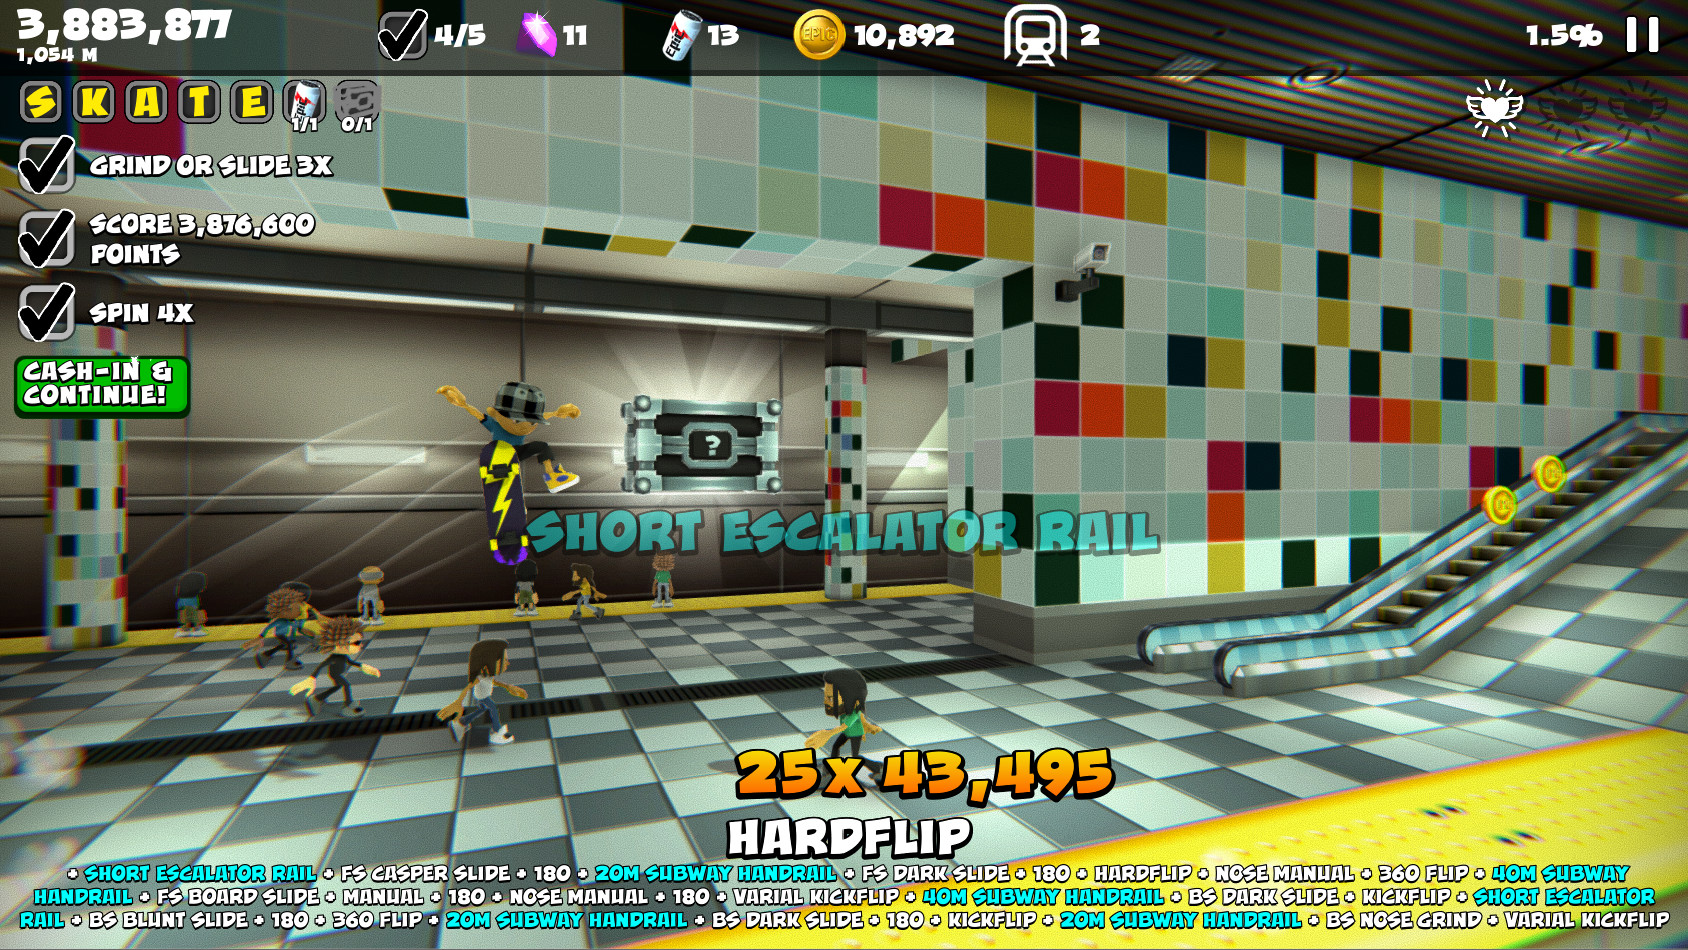 Jogo Subway Runner 2D no Jogos 360